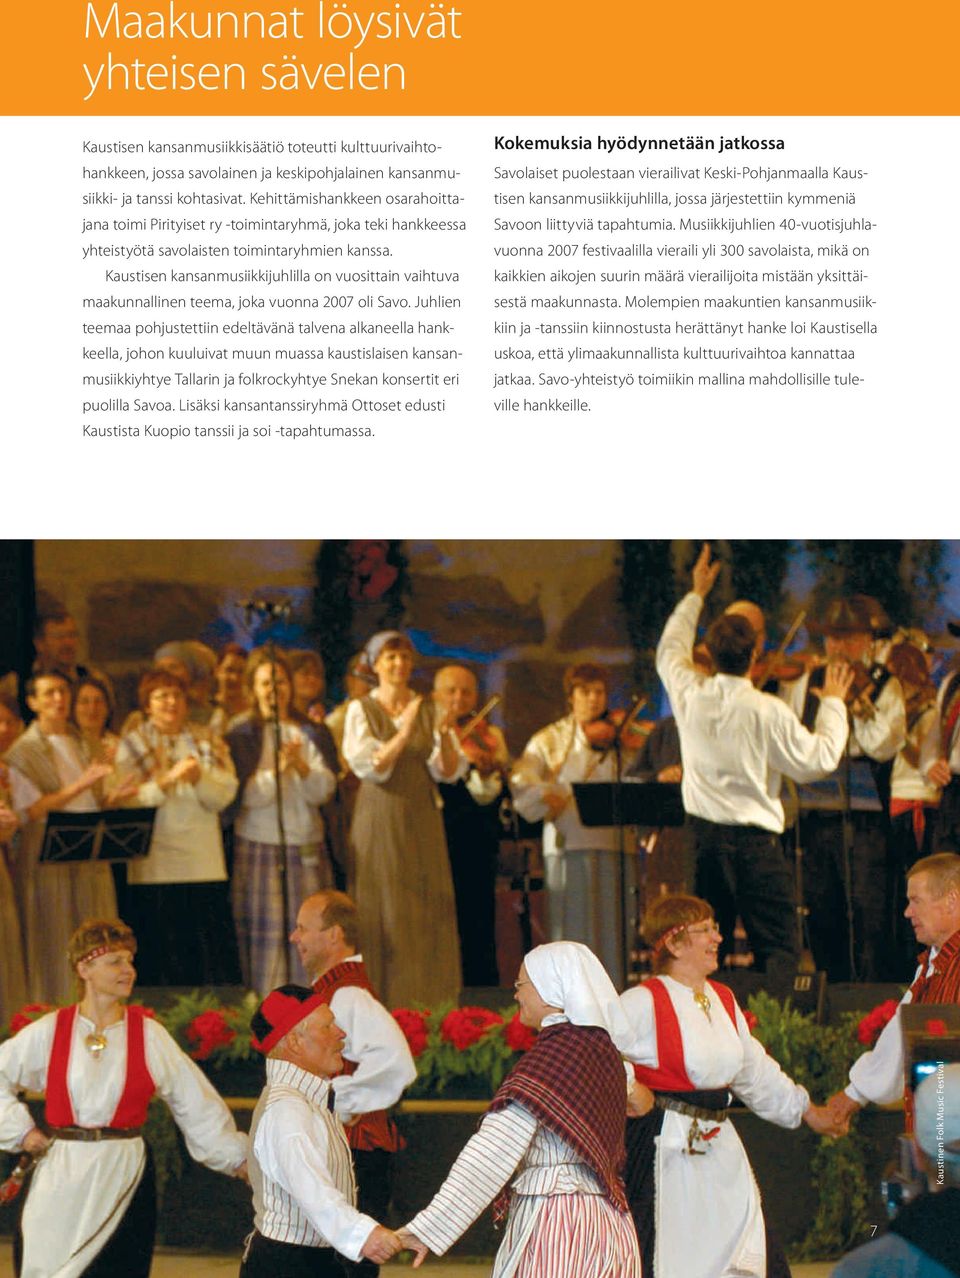 Kaustisen kansanmusiikkijuhlilla on vuosittain vaihtuva maakunnallinen teema, joka vuonna 2007 oli Savo.